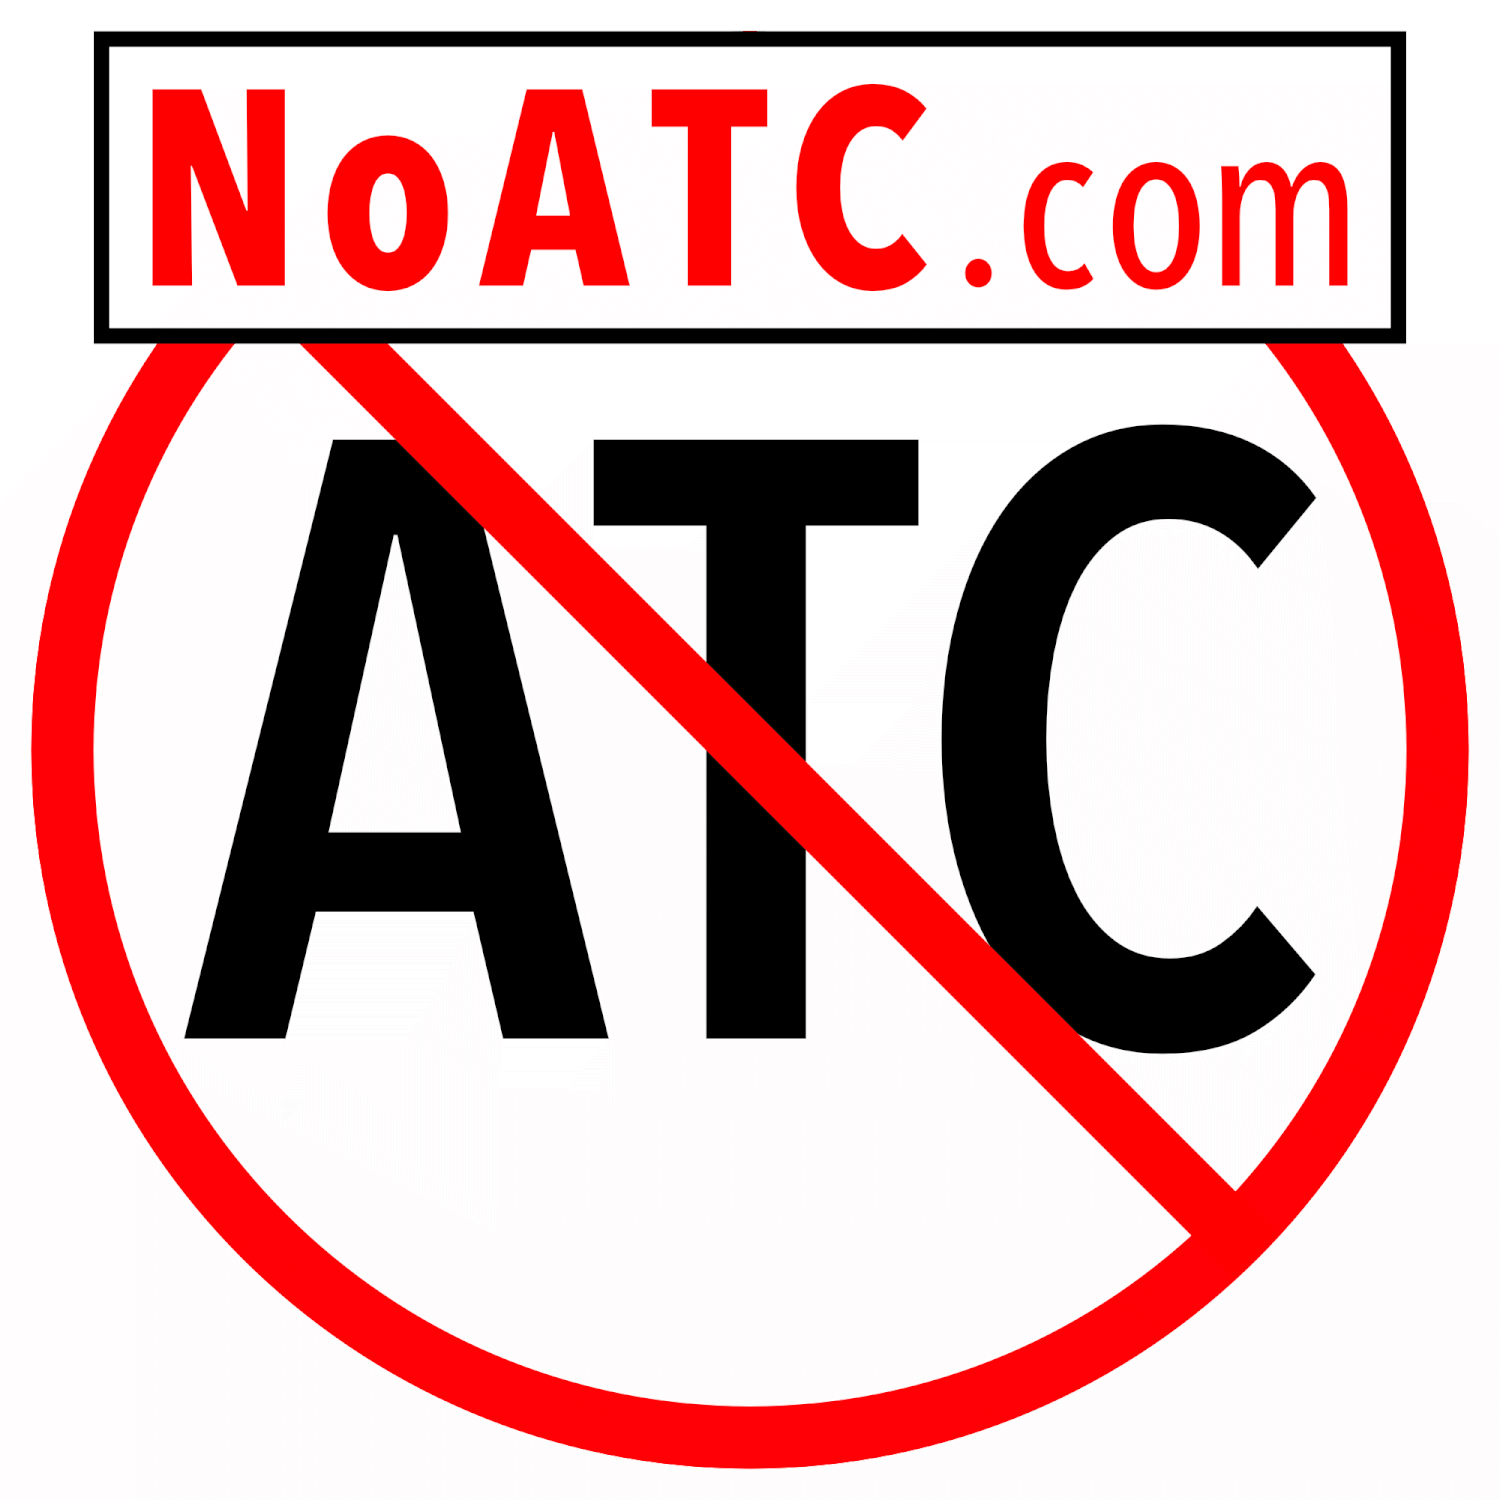 NoATC.com